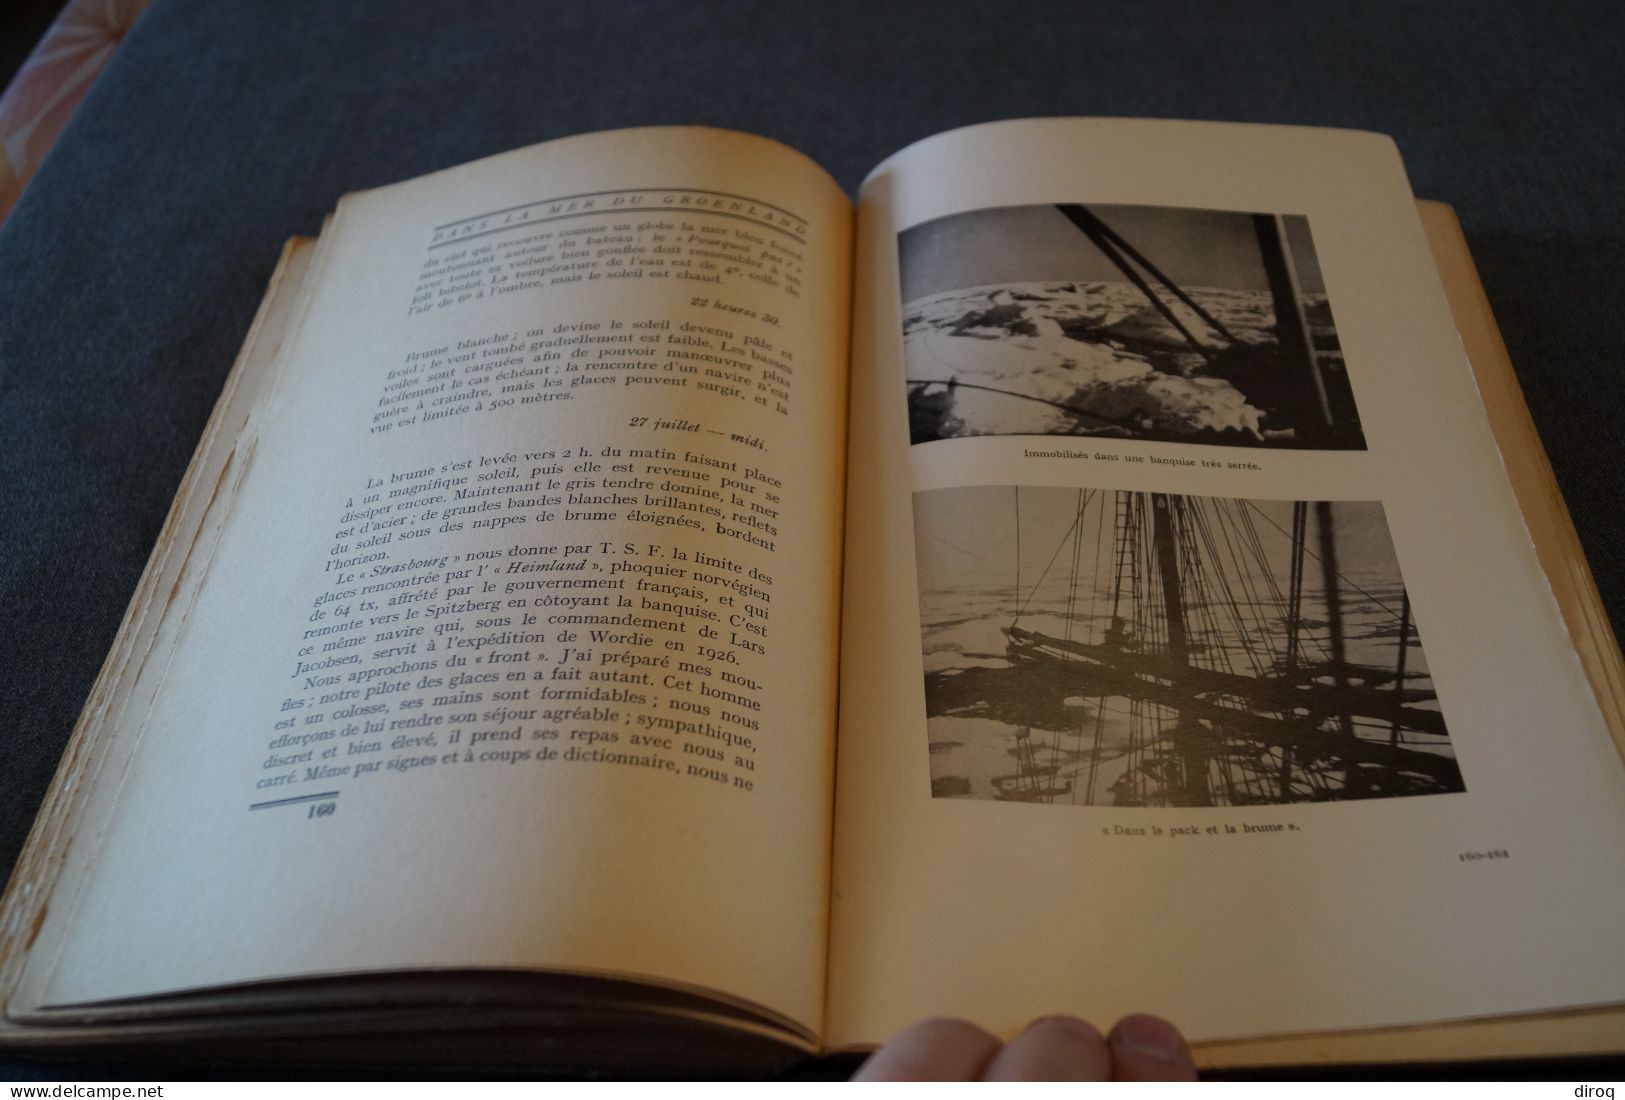 J.B. Charcot,1937,Dans la Mer du Groenland,205 pages + table,26 Cm./17 Cm. très bel état